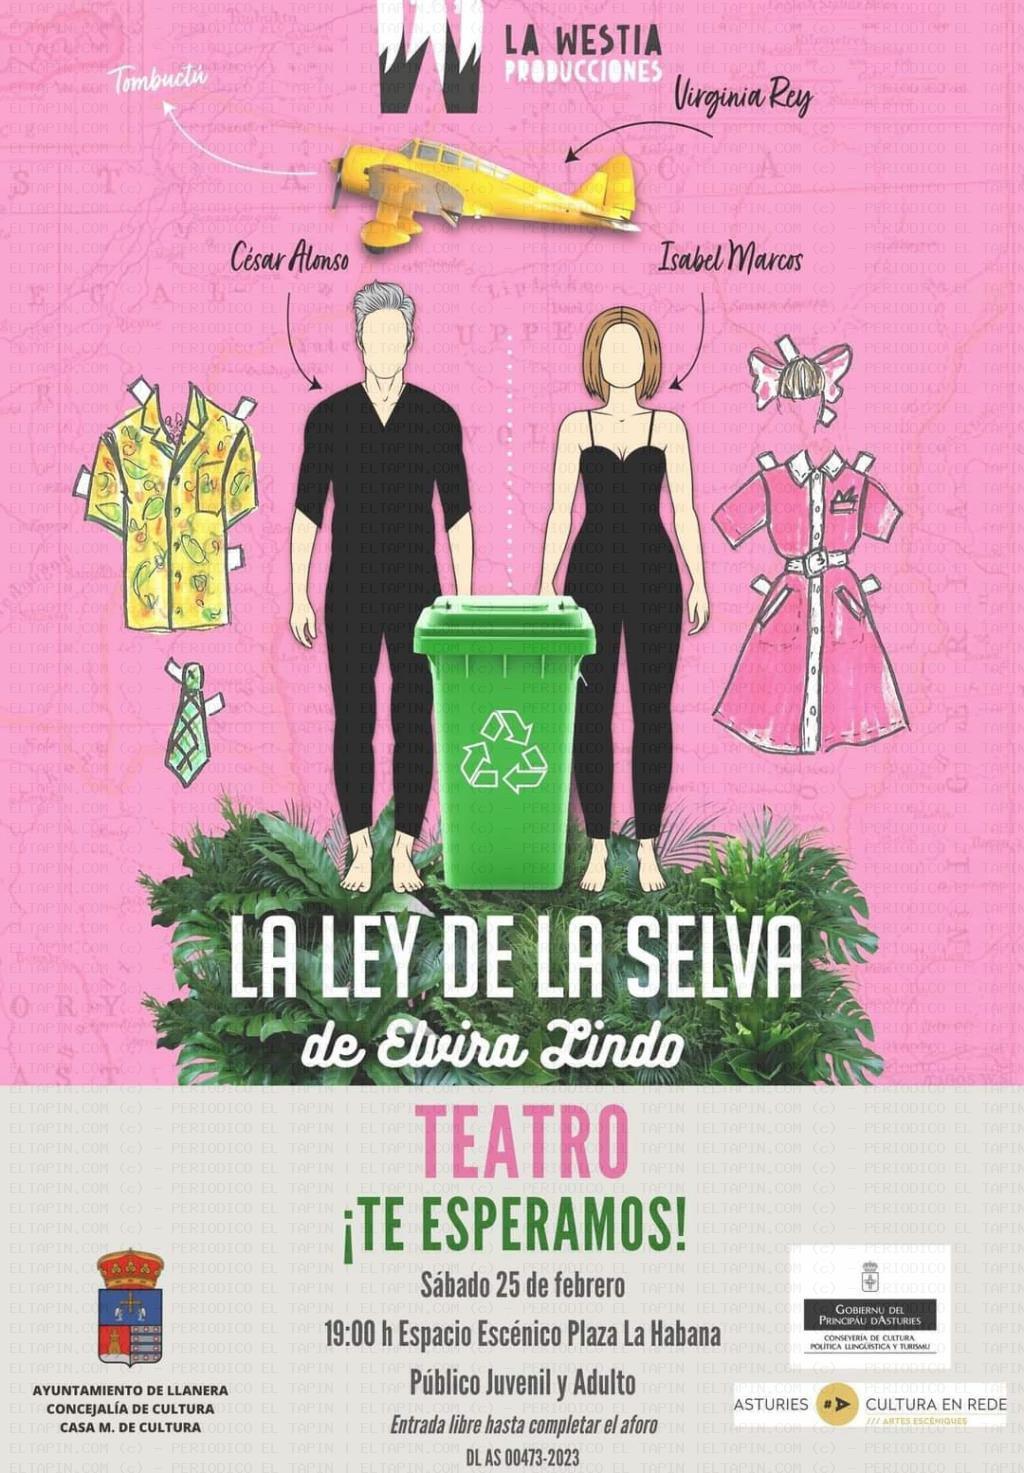 El Tapin - La obra de teatro "La Ley de la Selva" se representará el sábado 25 de febrero en el espacio escénico de La Habana